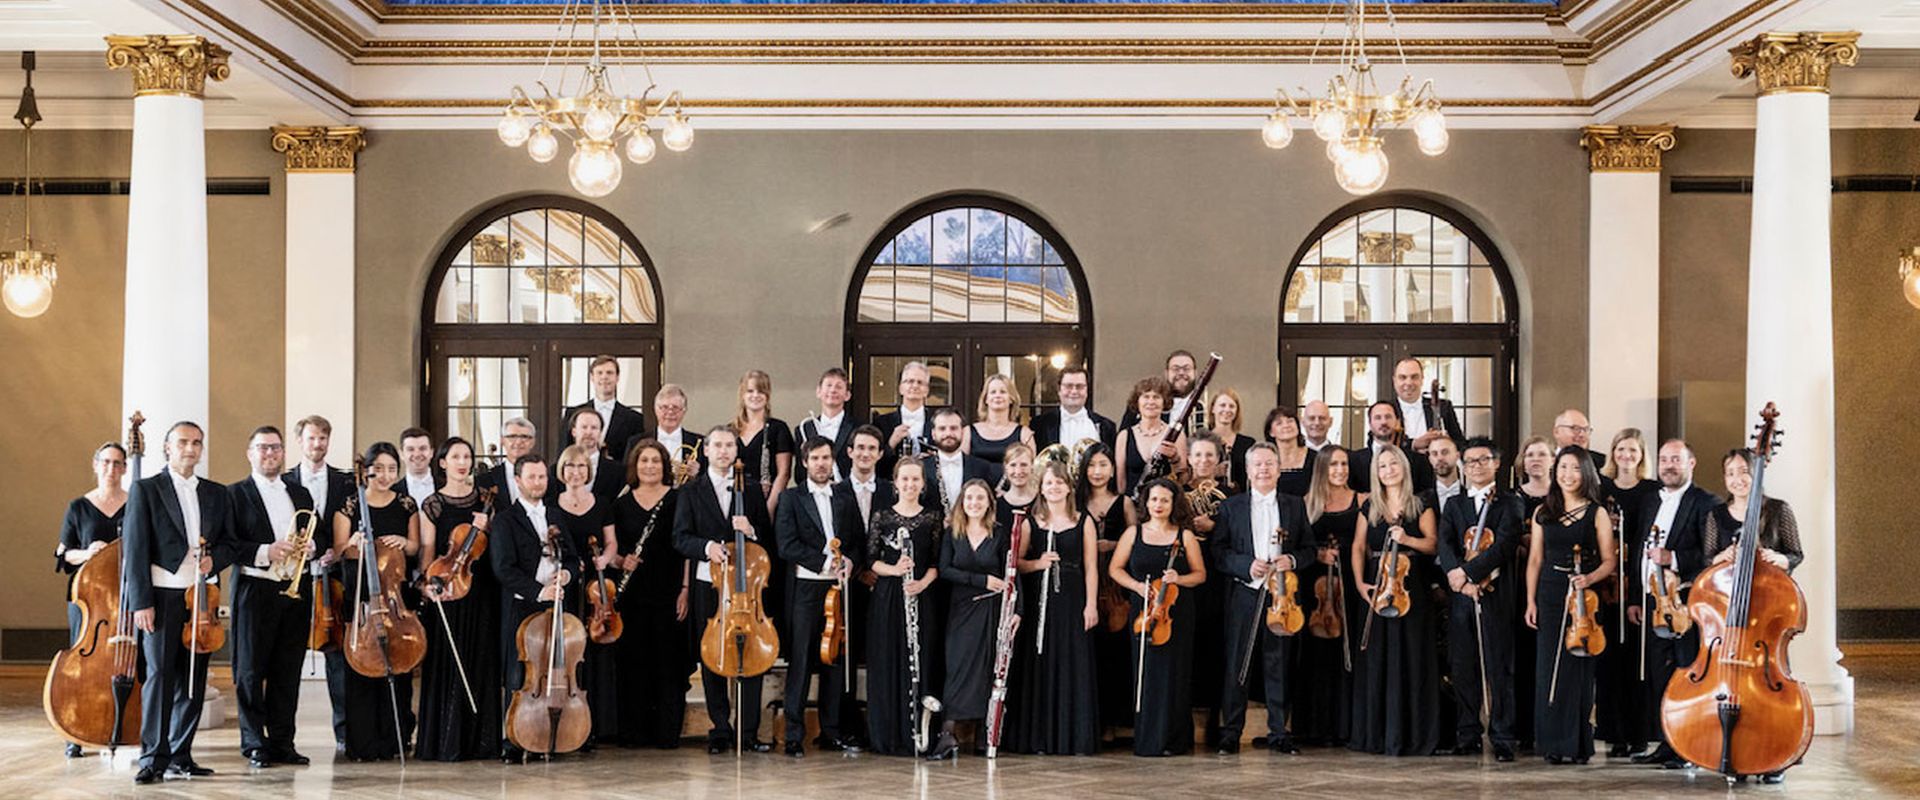 Das Ensemble der Münchner Symphoniker posiert in einem Prunkvollen Saal.